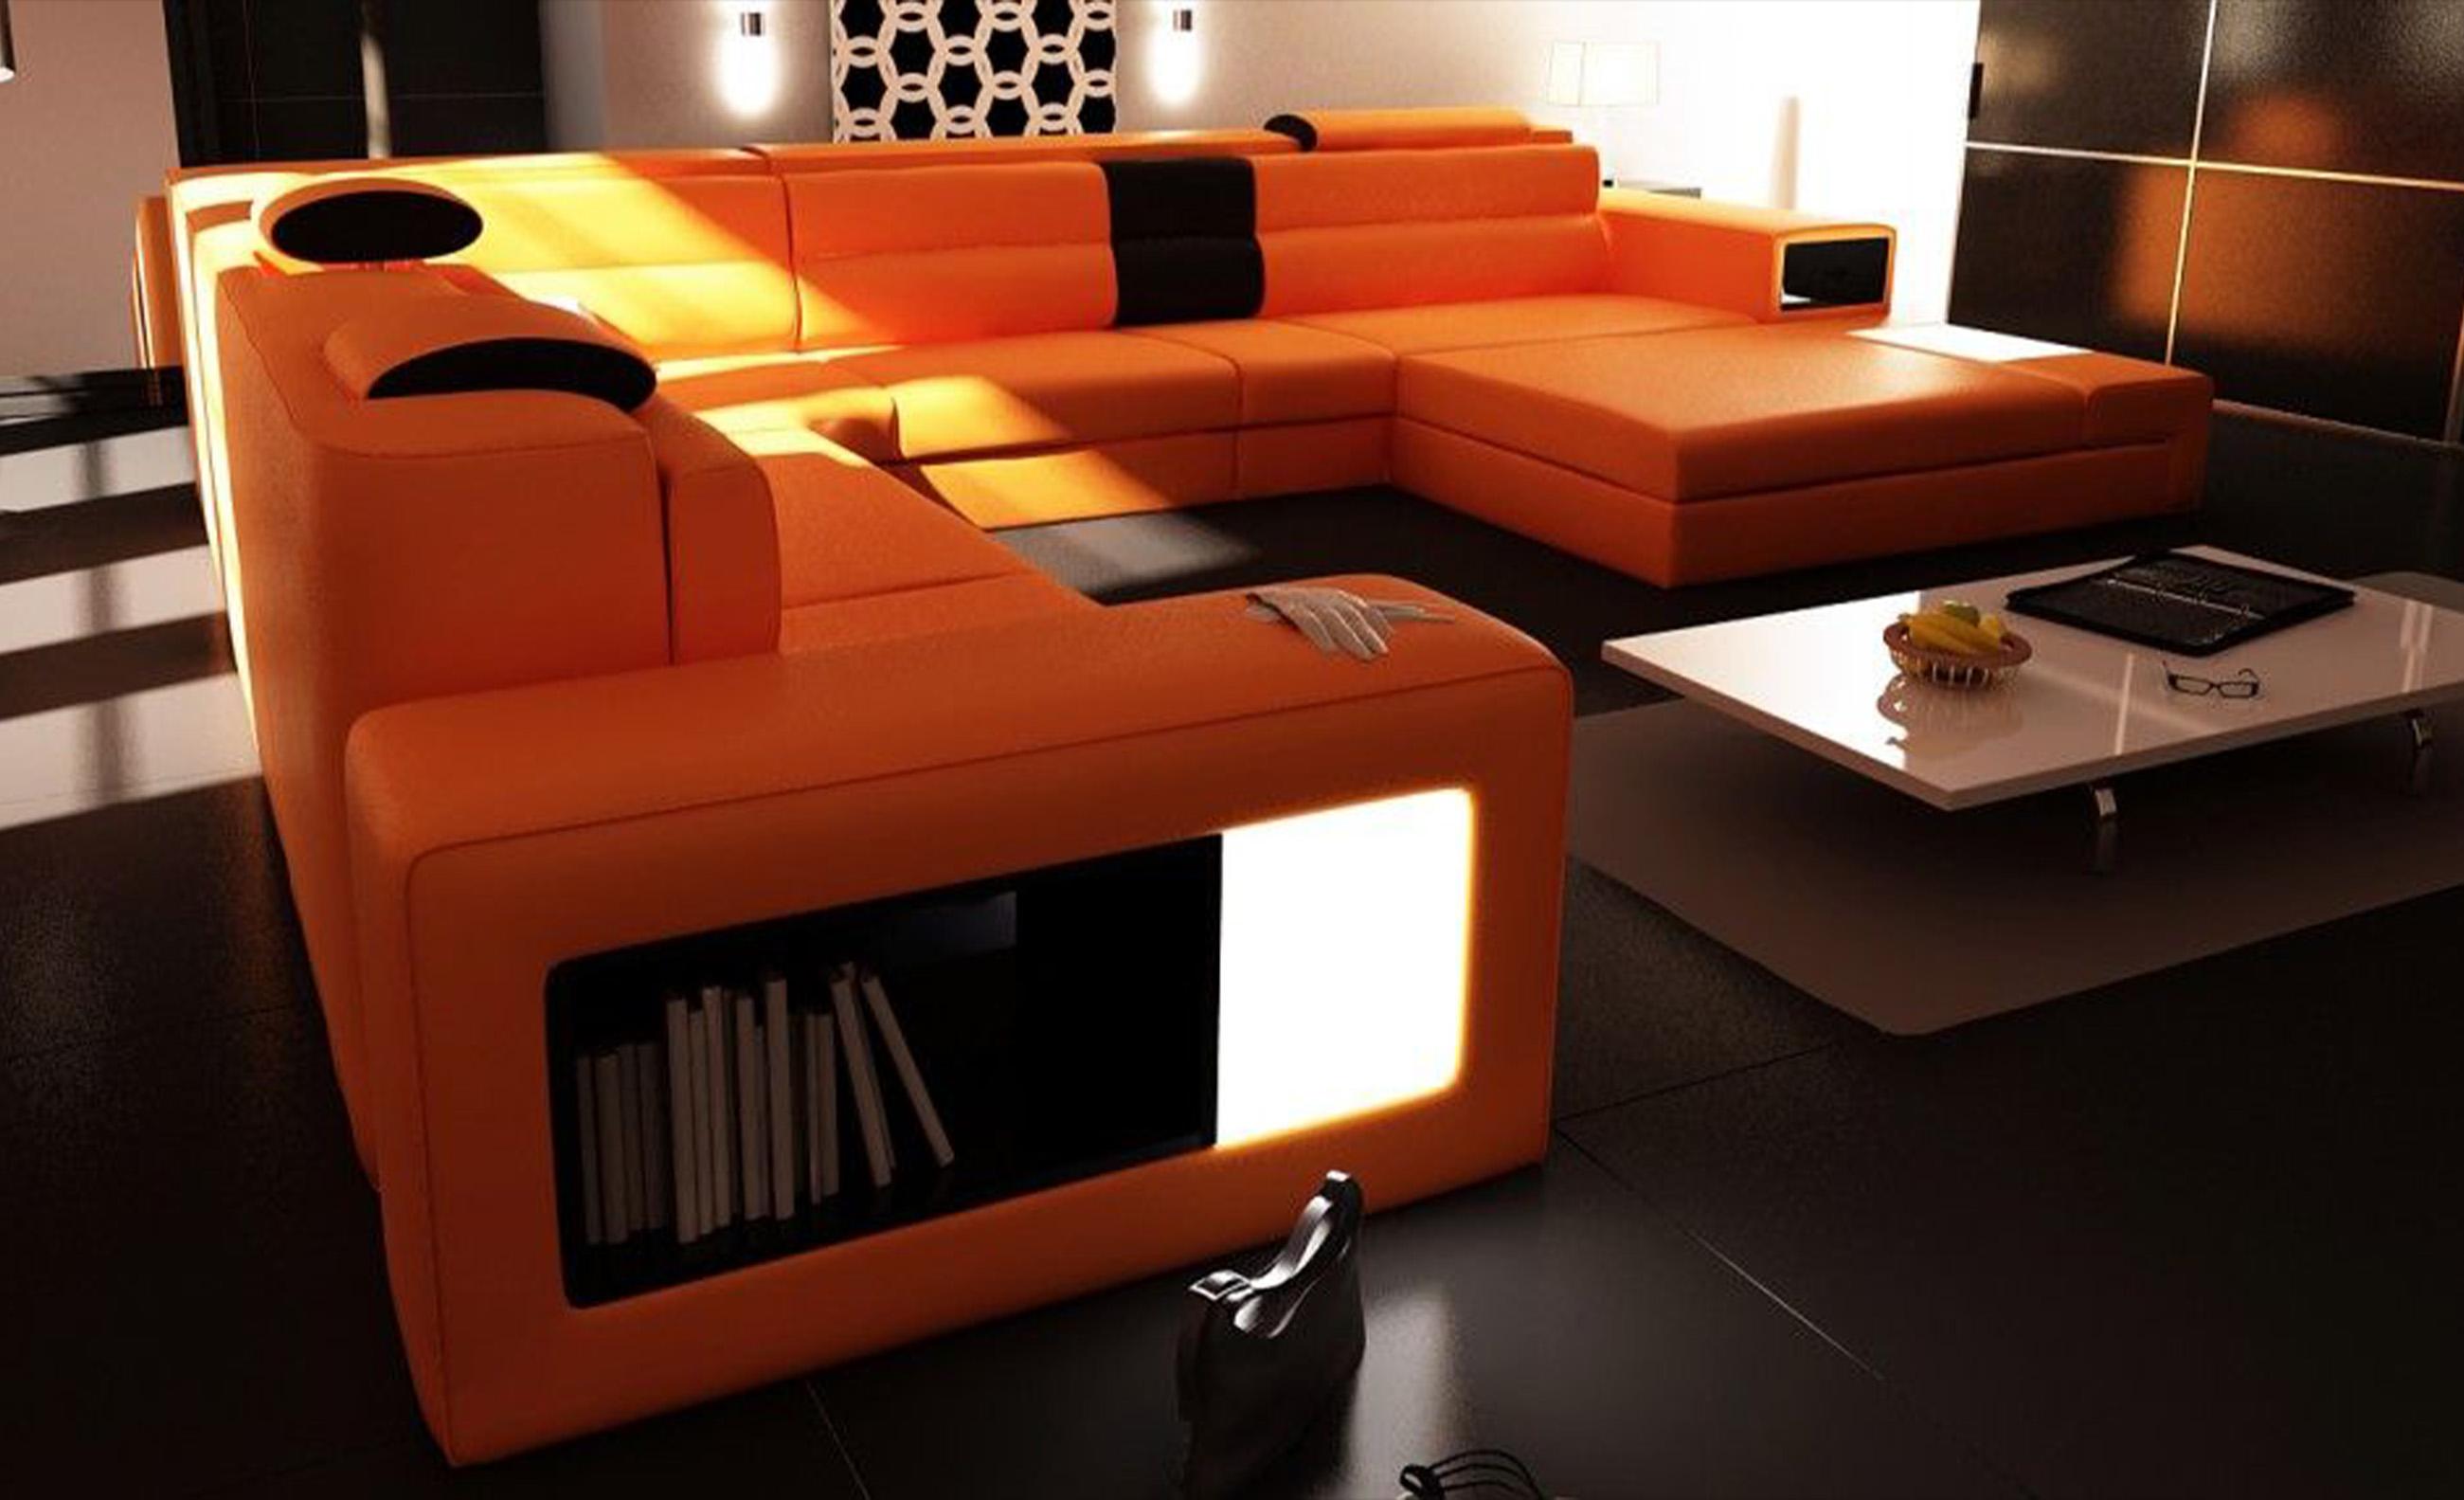 Orange Bonded Leather Sectional Sofa